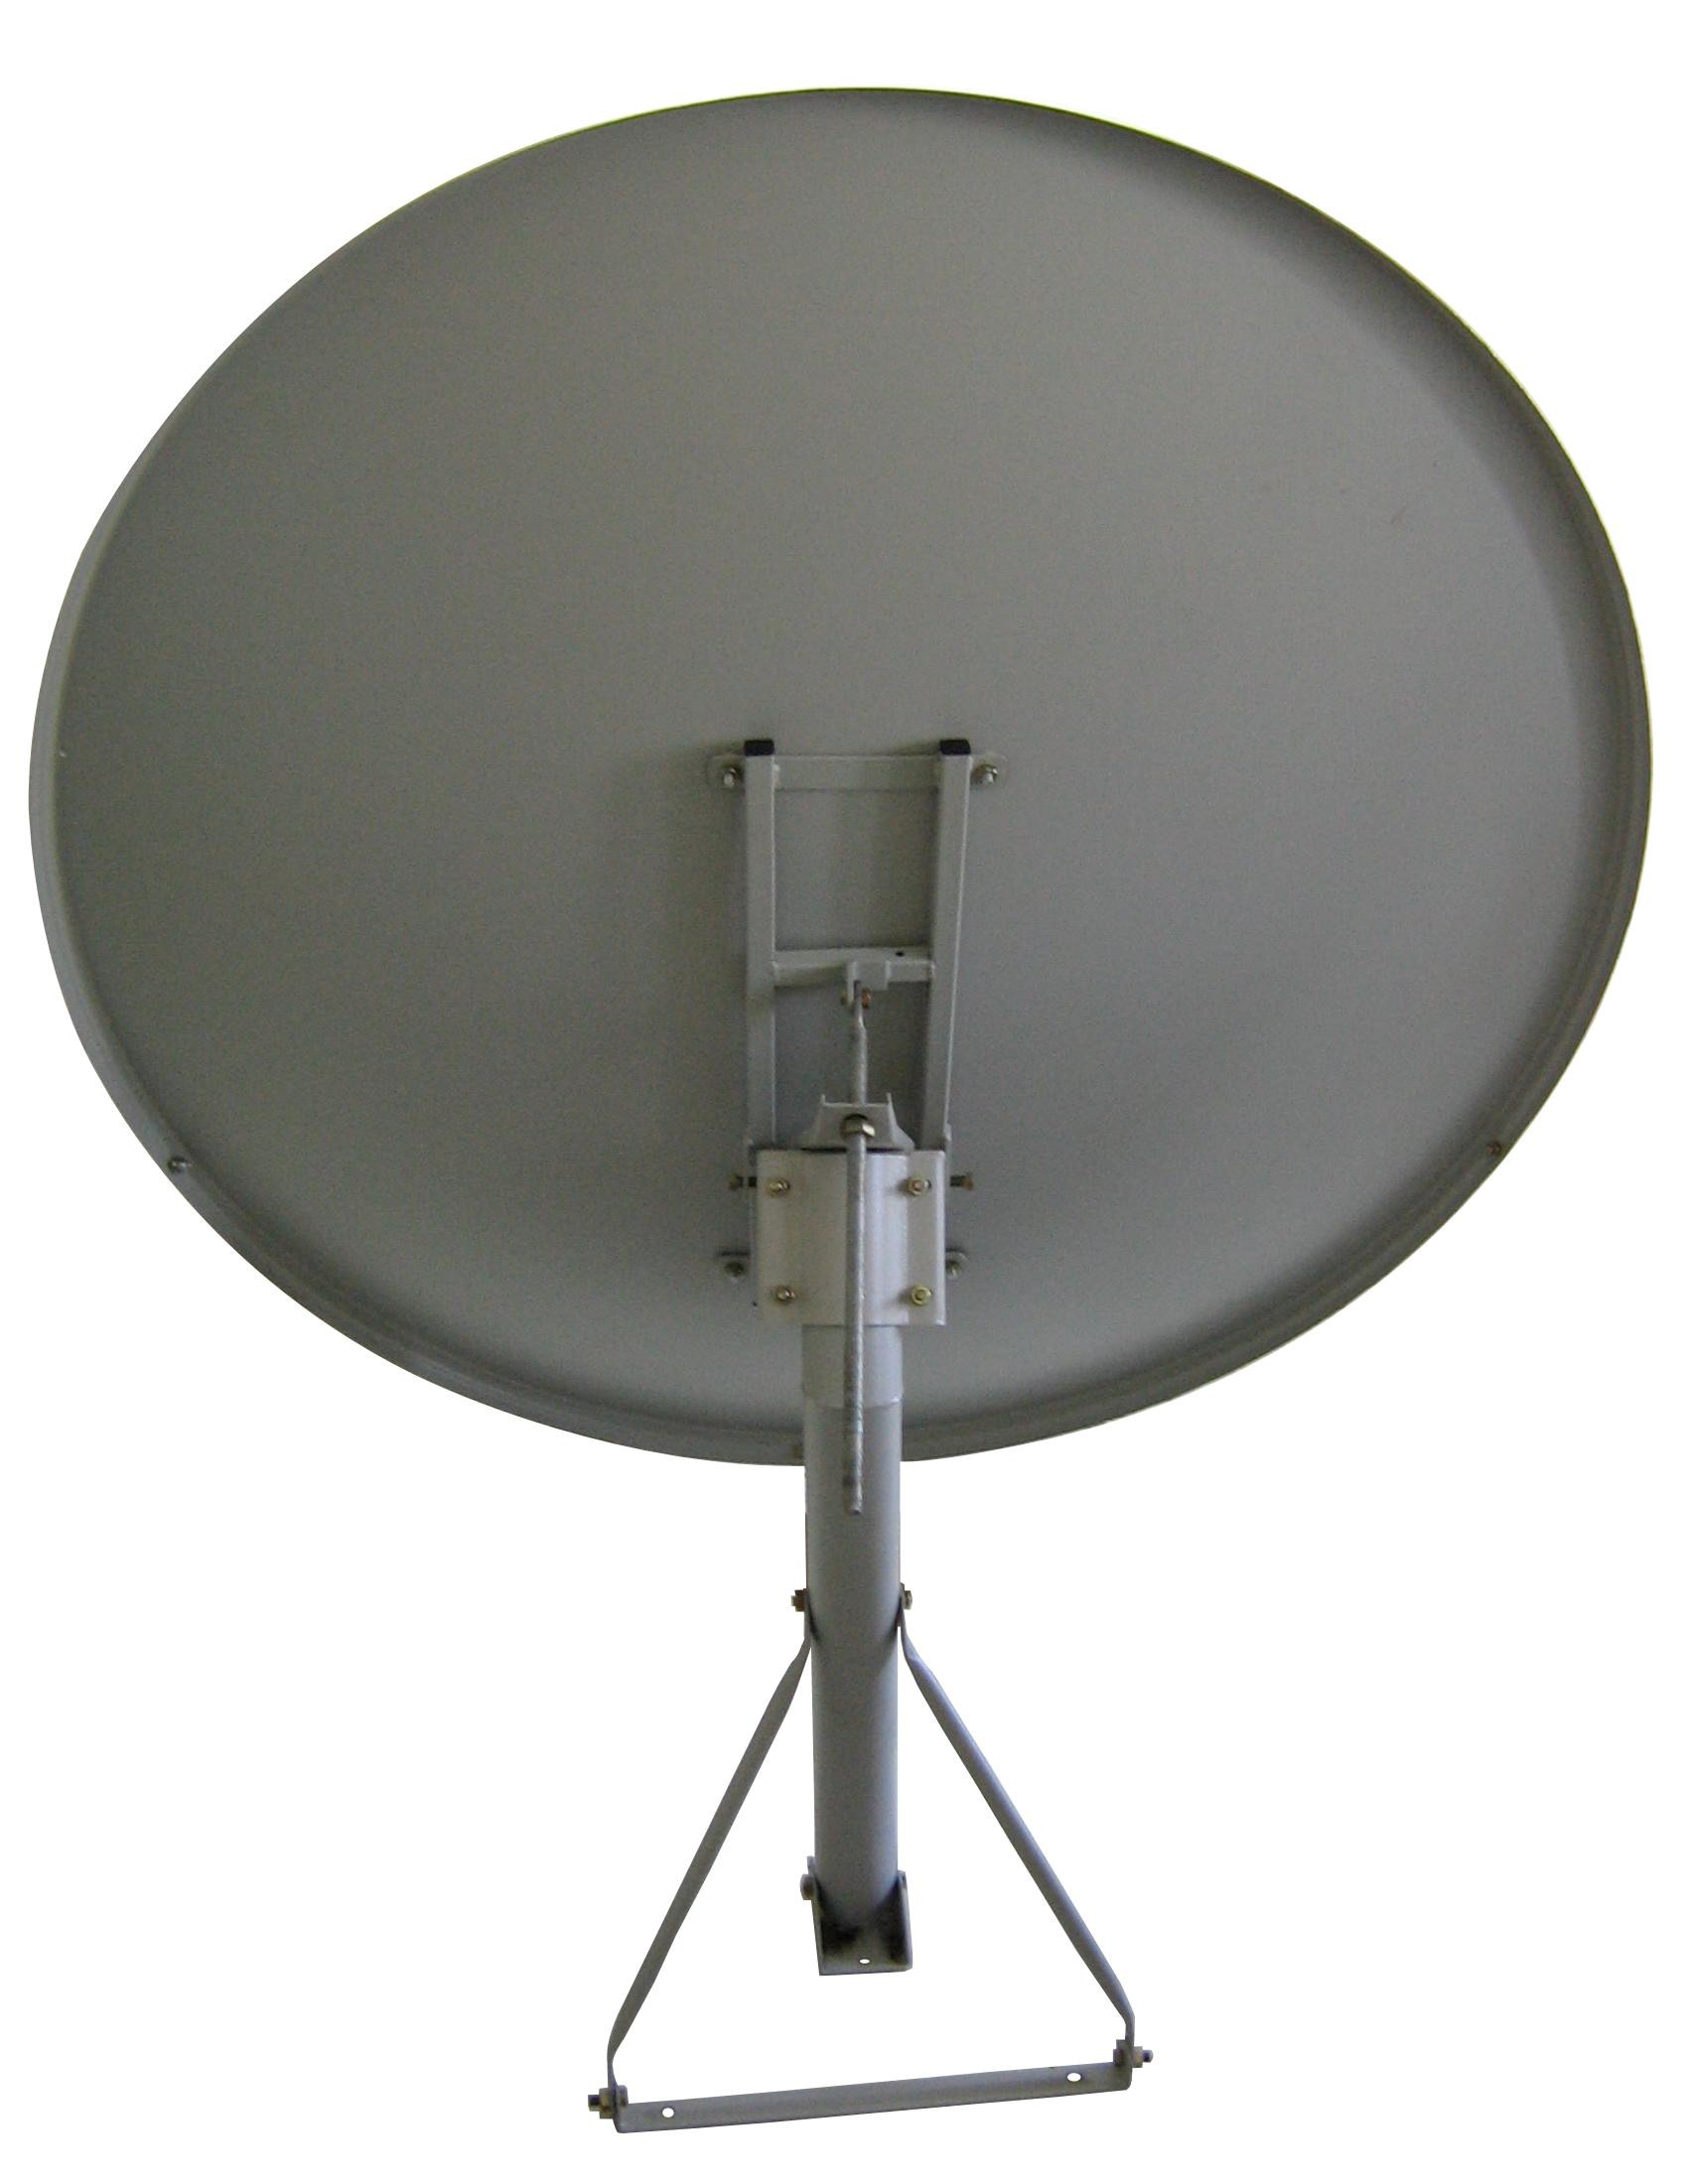 Antenne parabolique en bande Ku de 120 cm